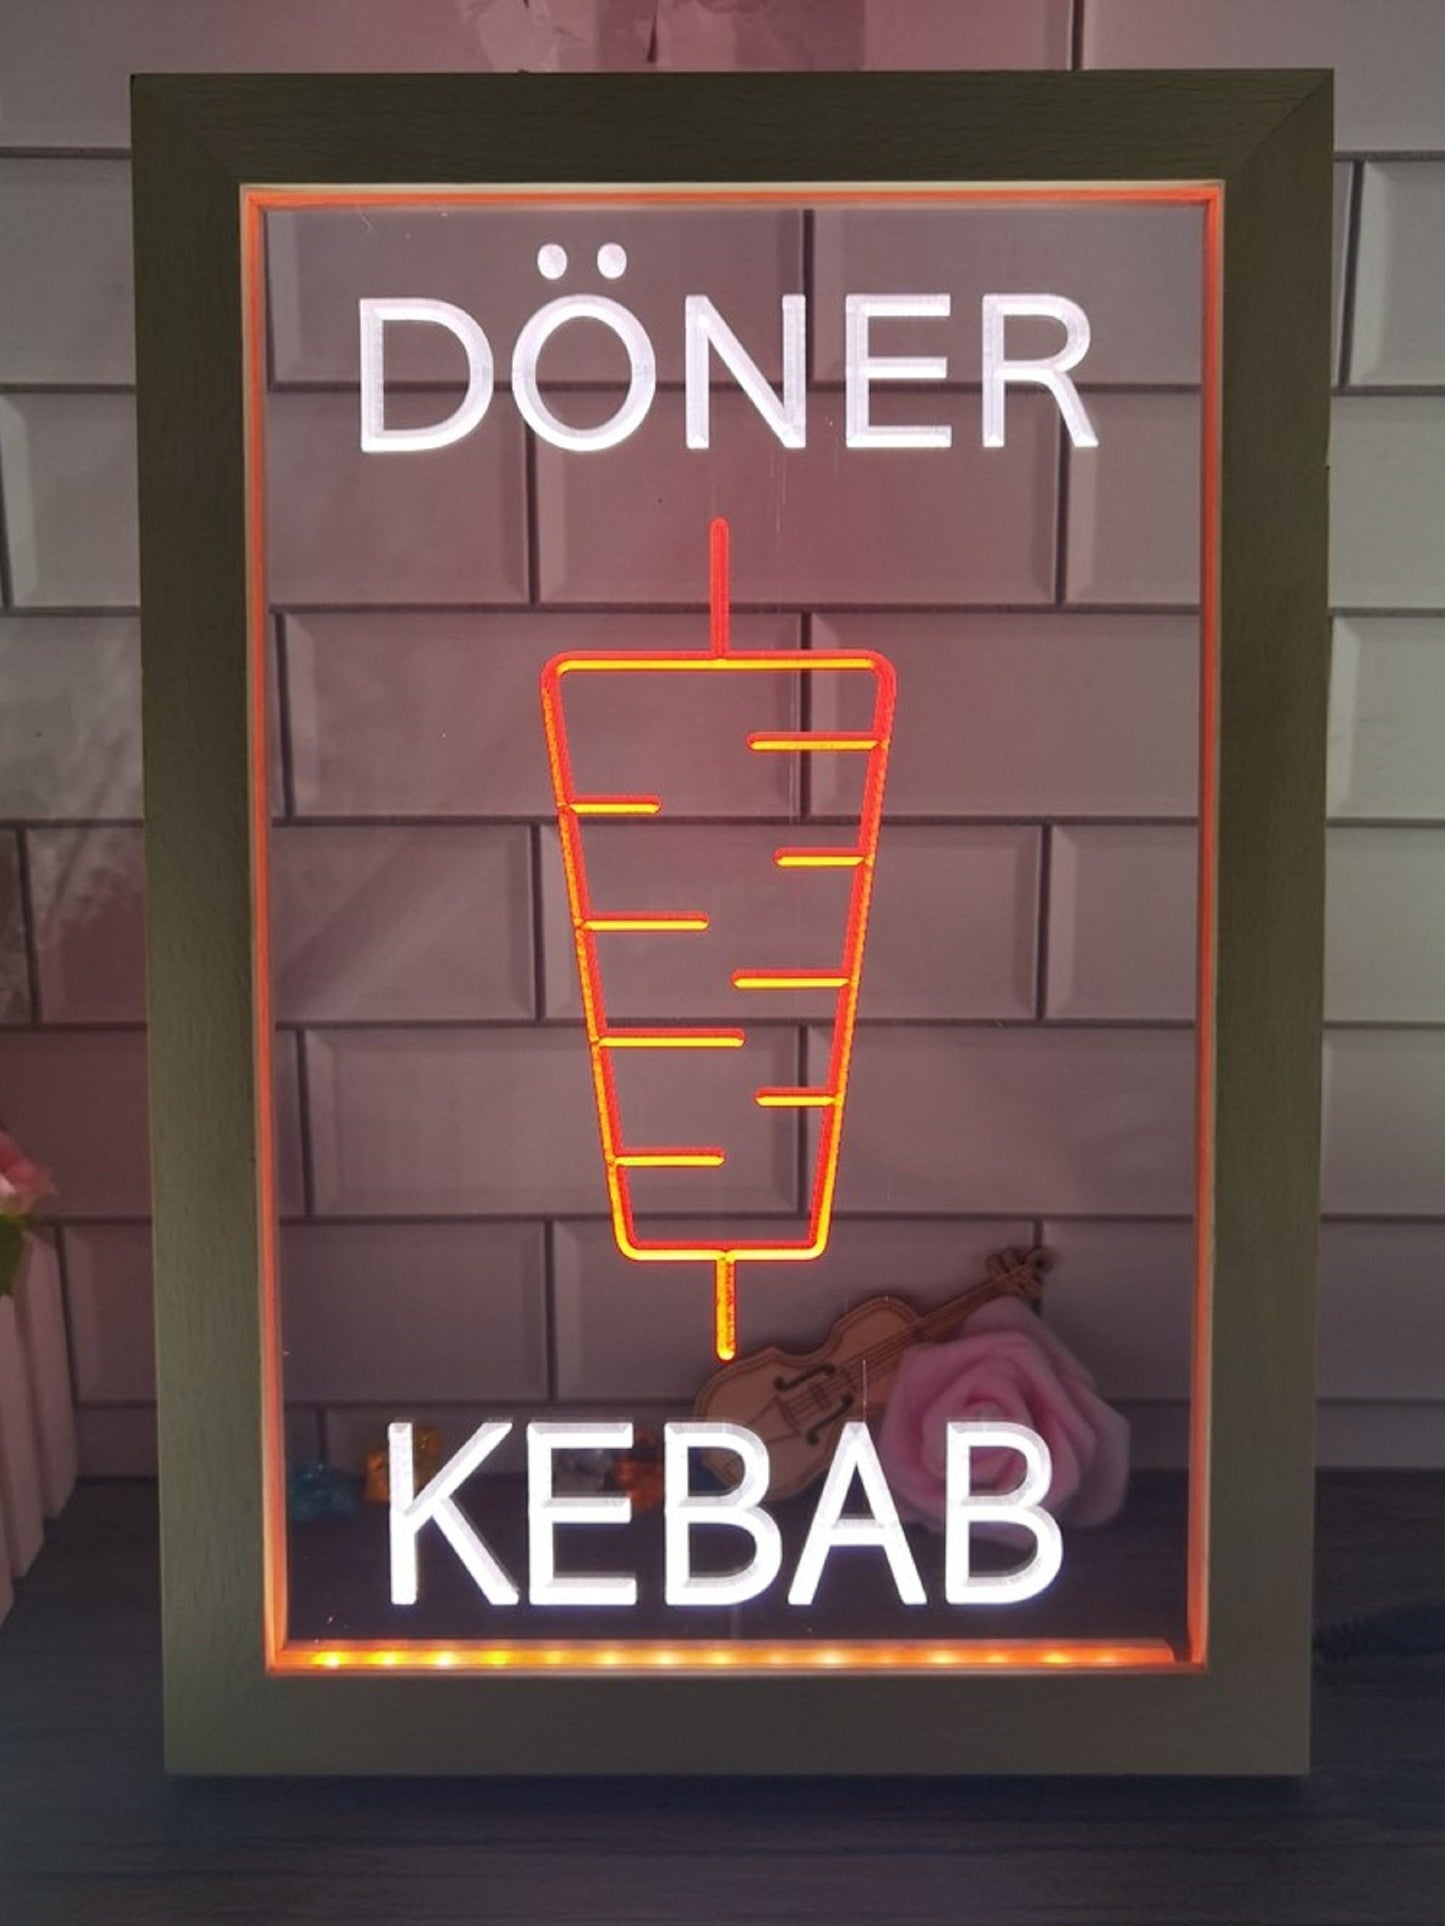 Neon Sign Framed Dual Color Doner Kebab Restaurant Fast Food Shop Wall Decor